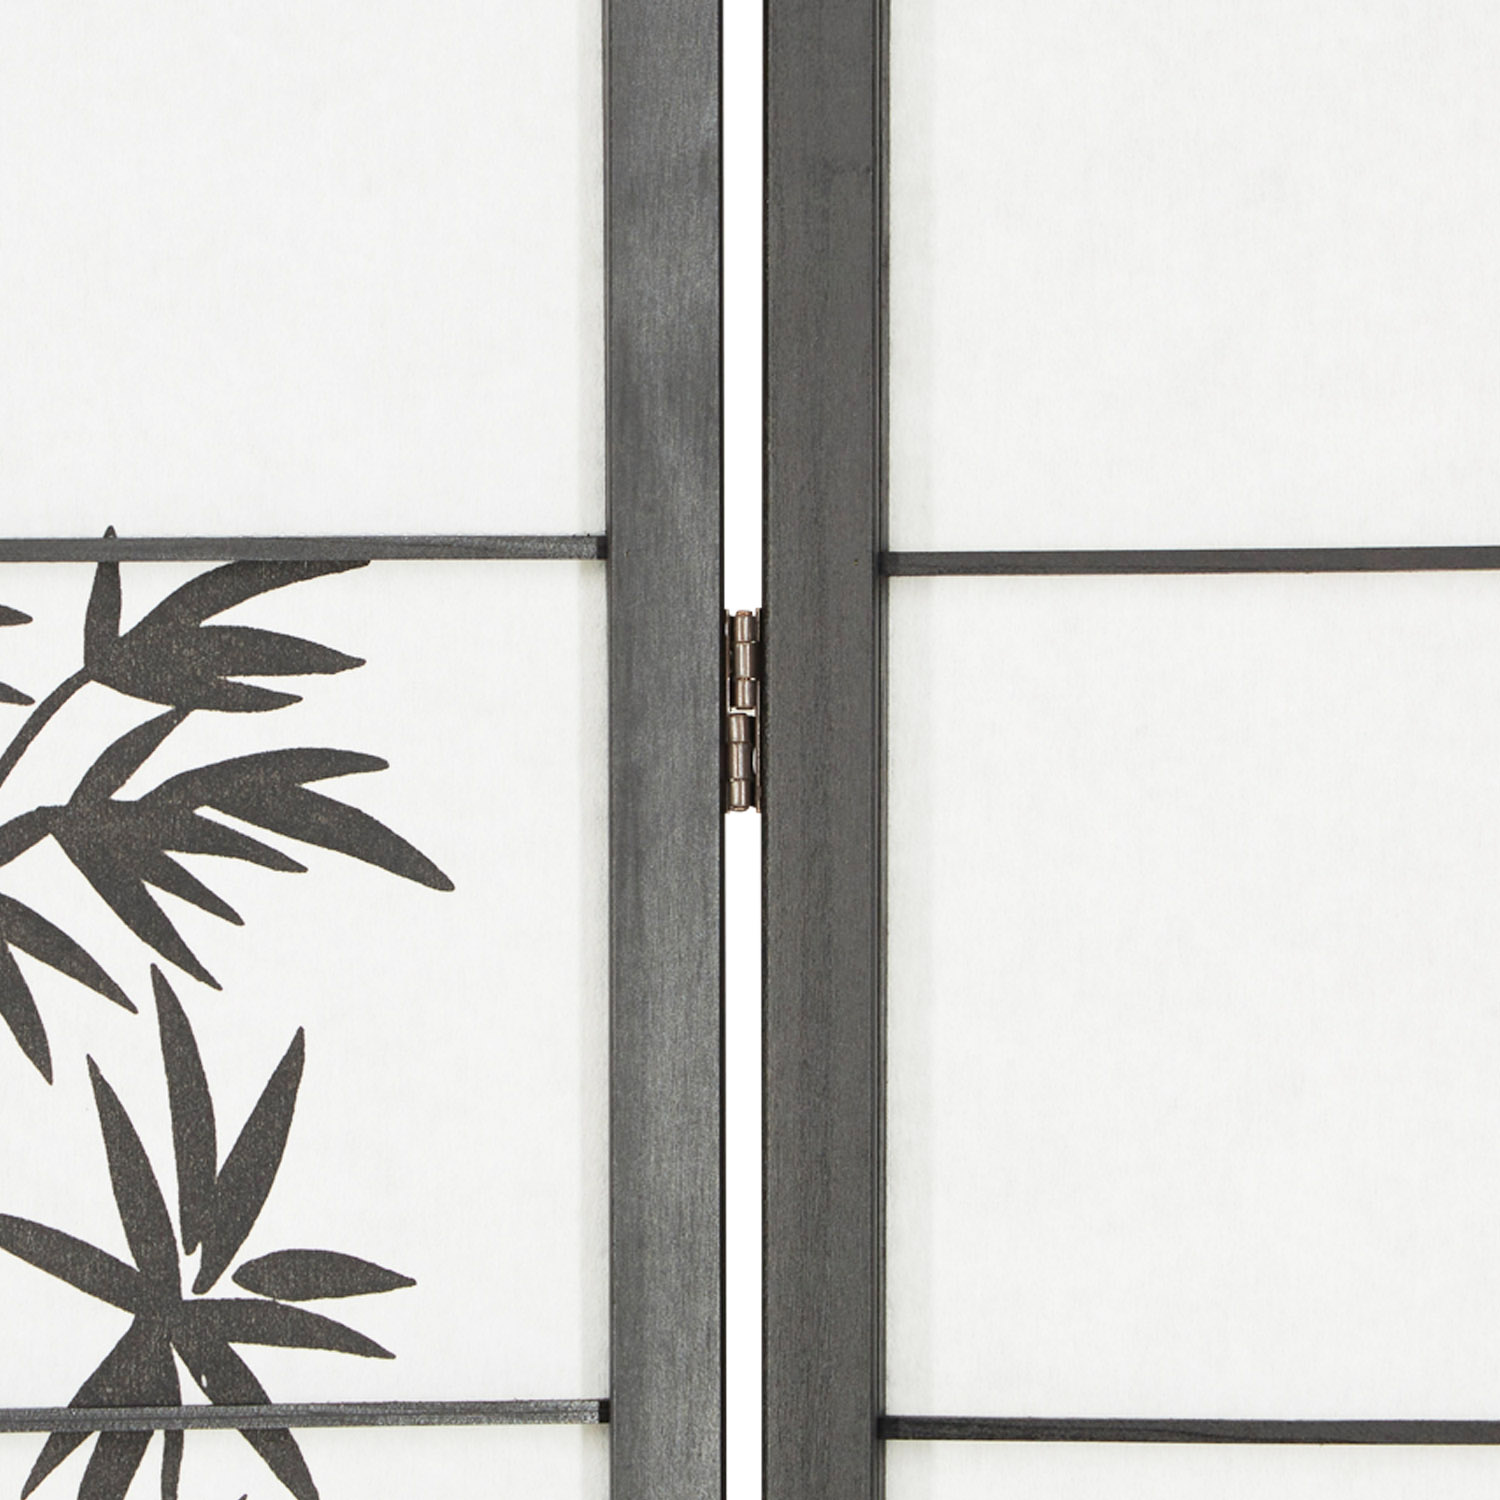 Paravent Raumteiler 4 teilig, Holz Schwarz, Reispapier Weiß, Bambusmuster, Höhe 179 cm	